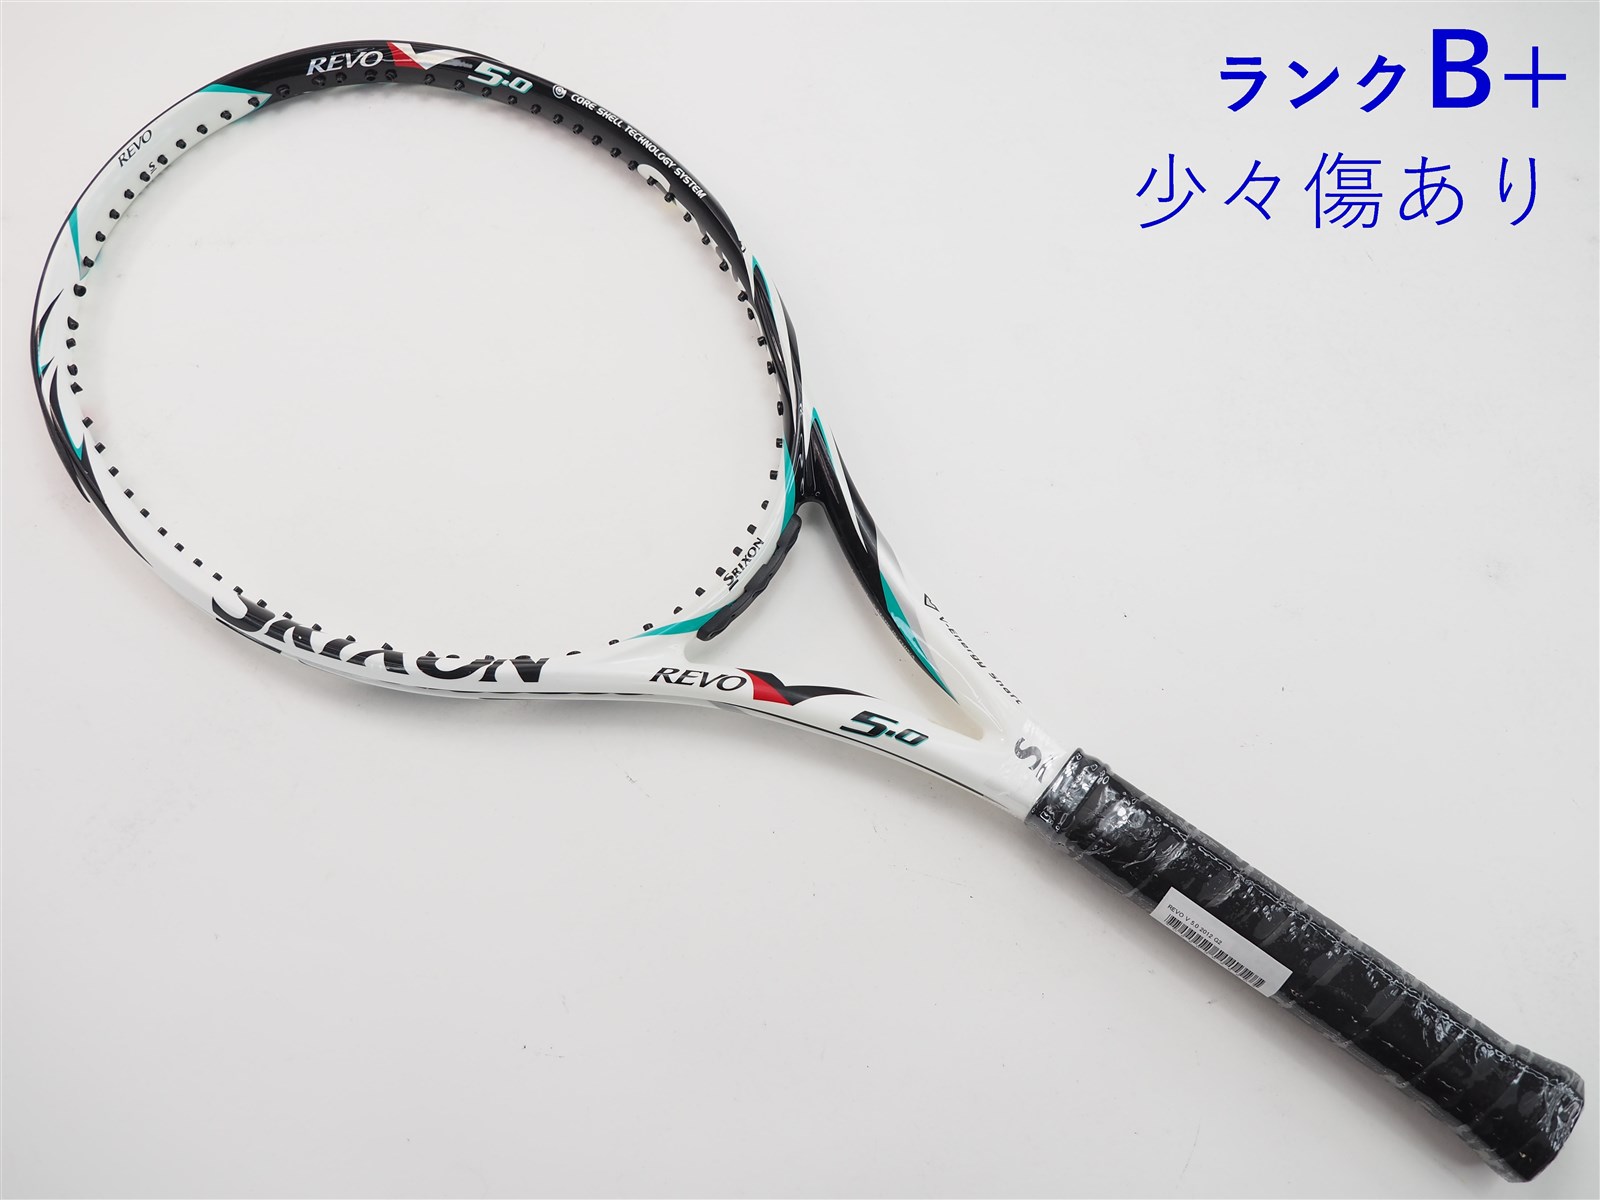 テニスラケット スリクソン レヴォ シーブイ 5.0 2018年モデル (G2)SRIXON REVO CV 5.0 2018